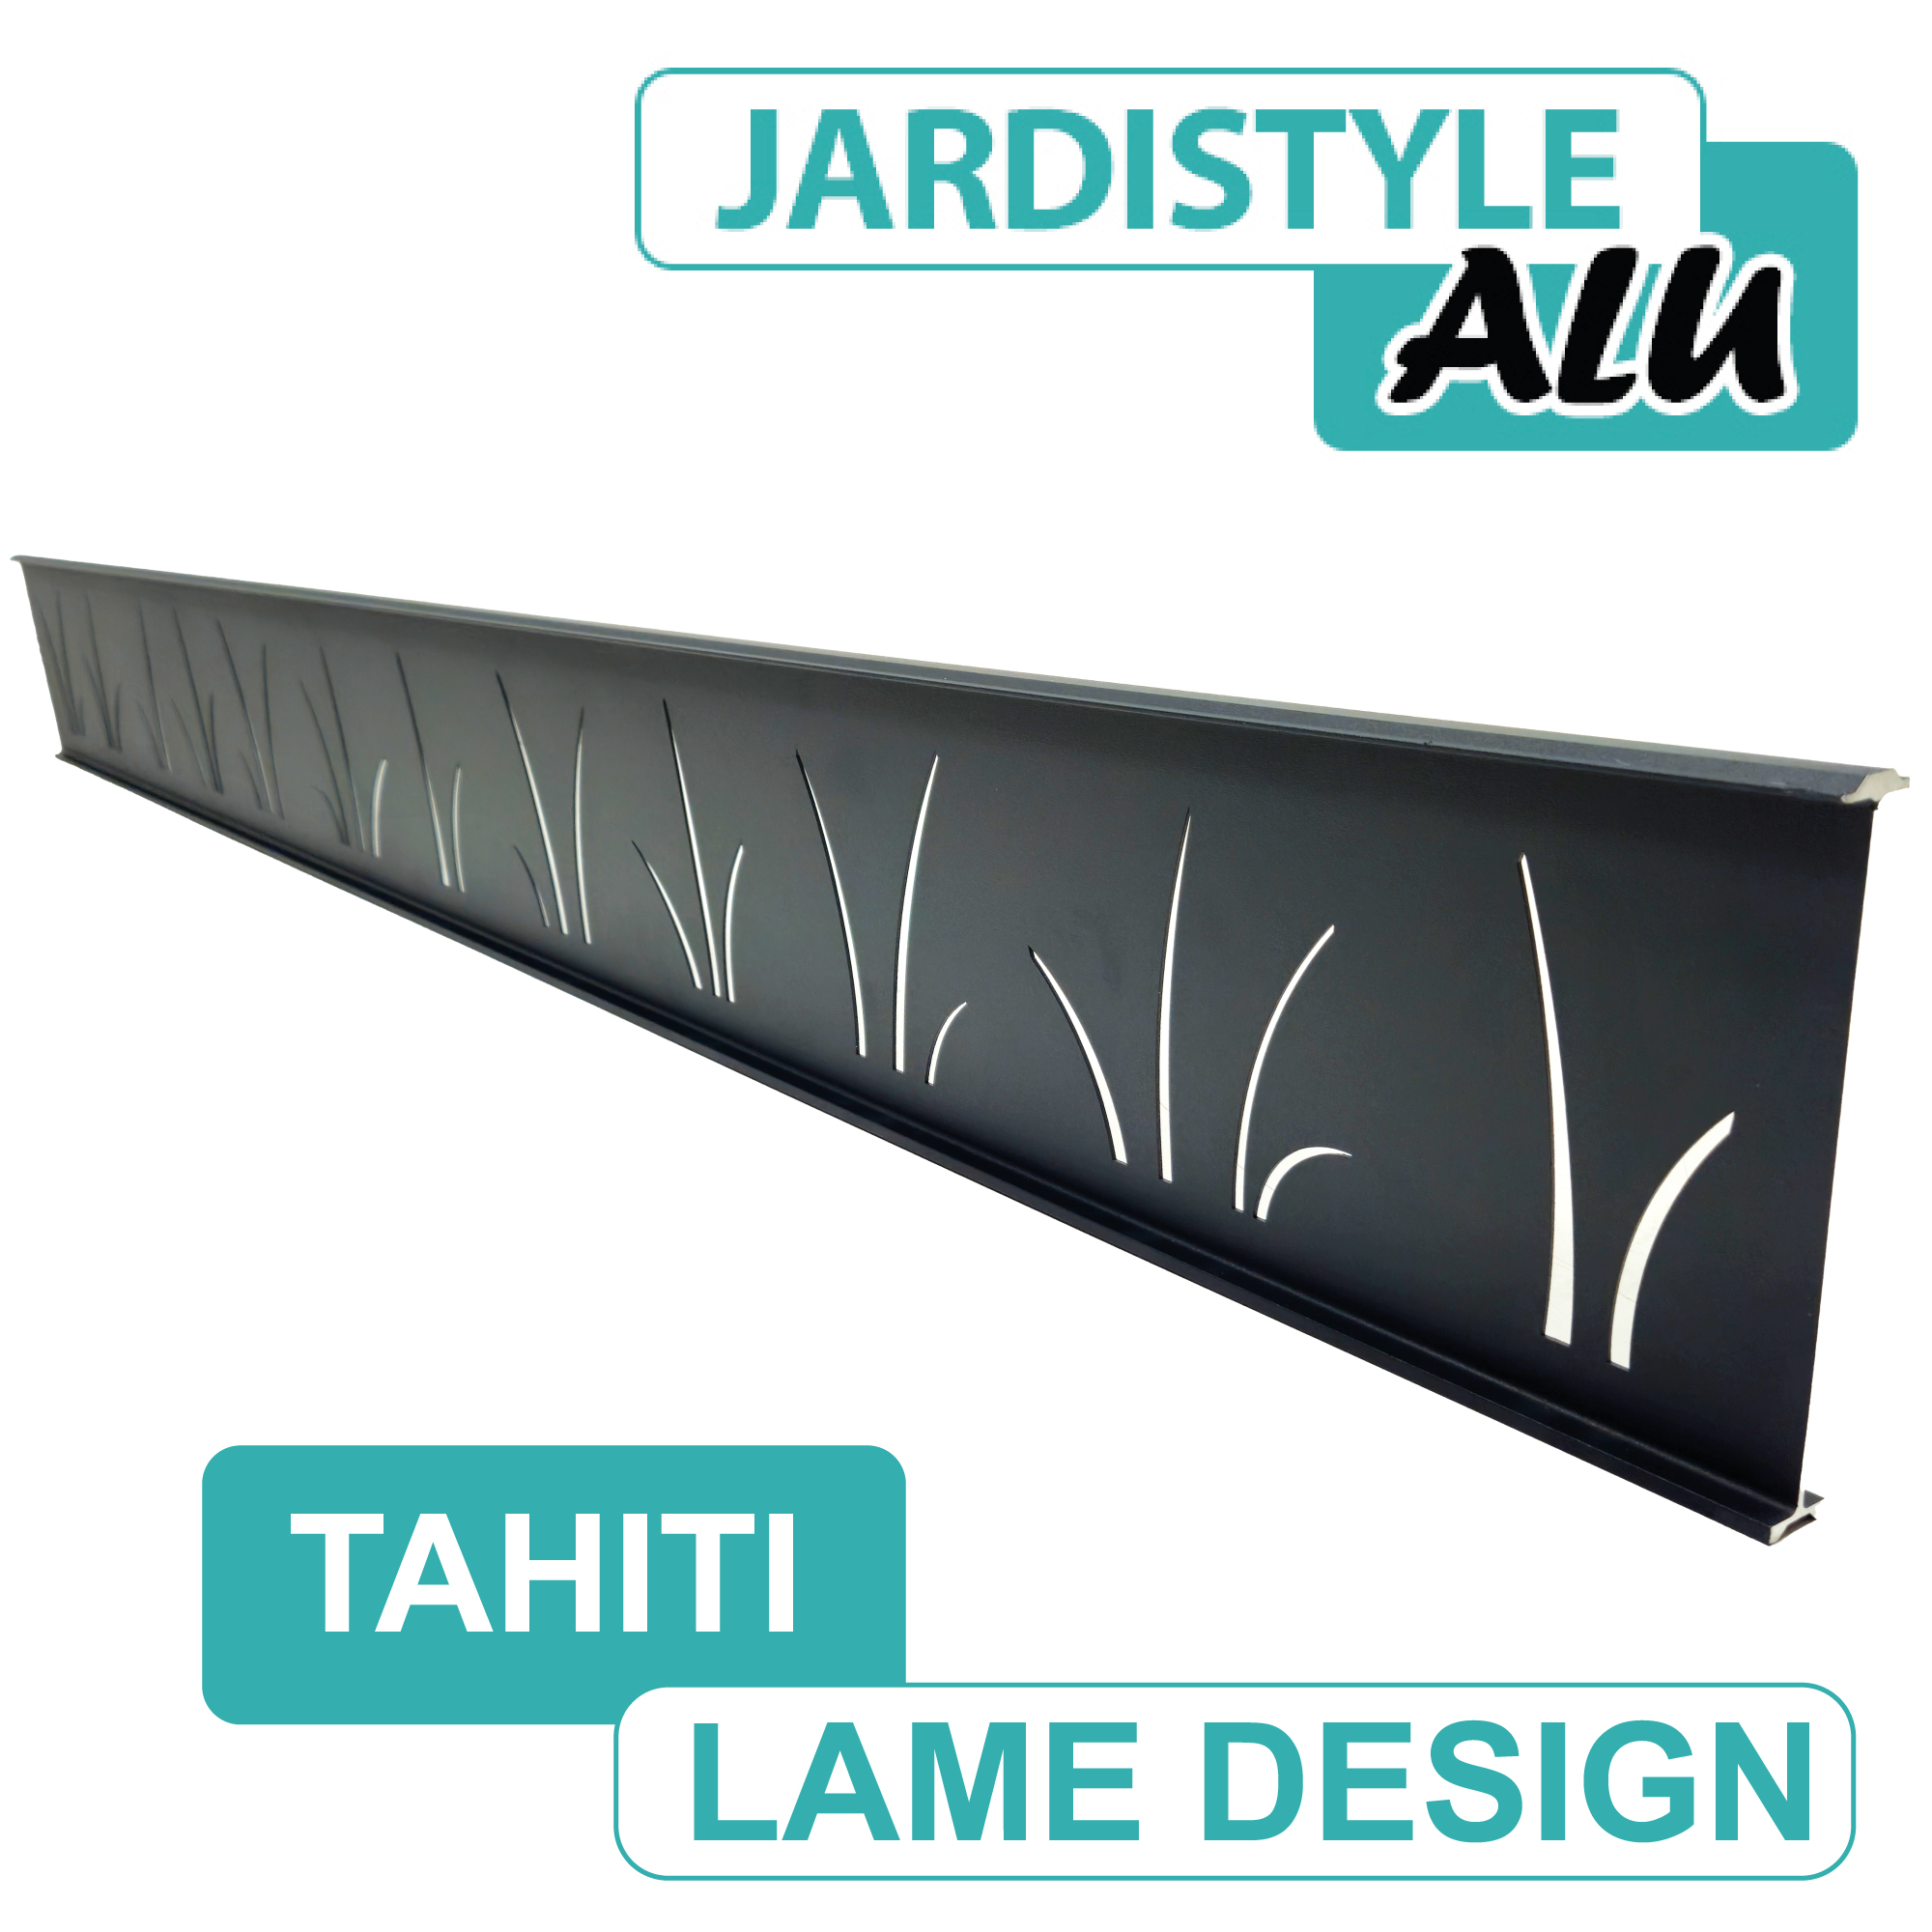 Design - TAHITI